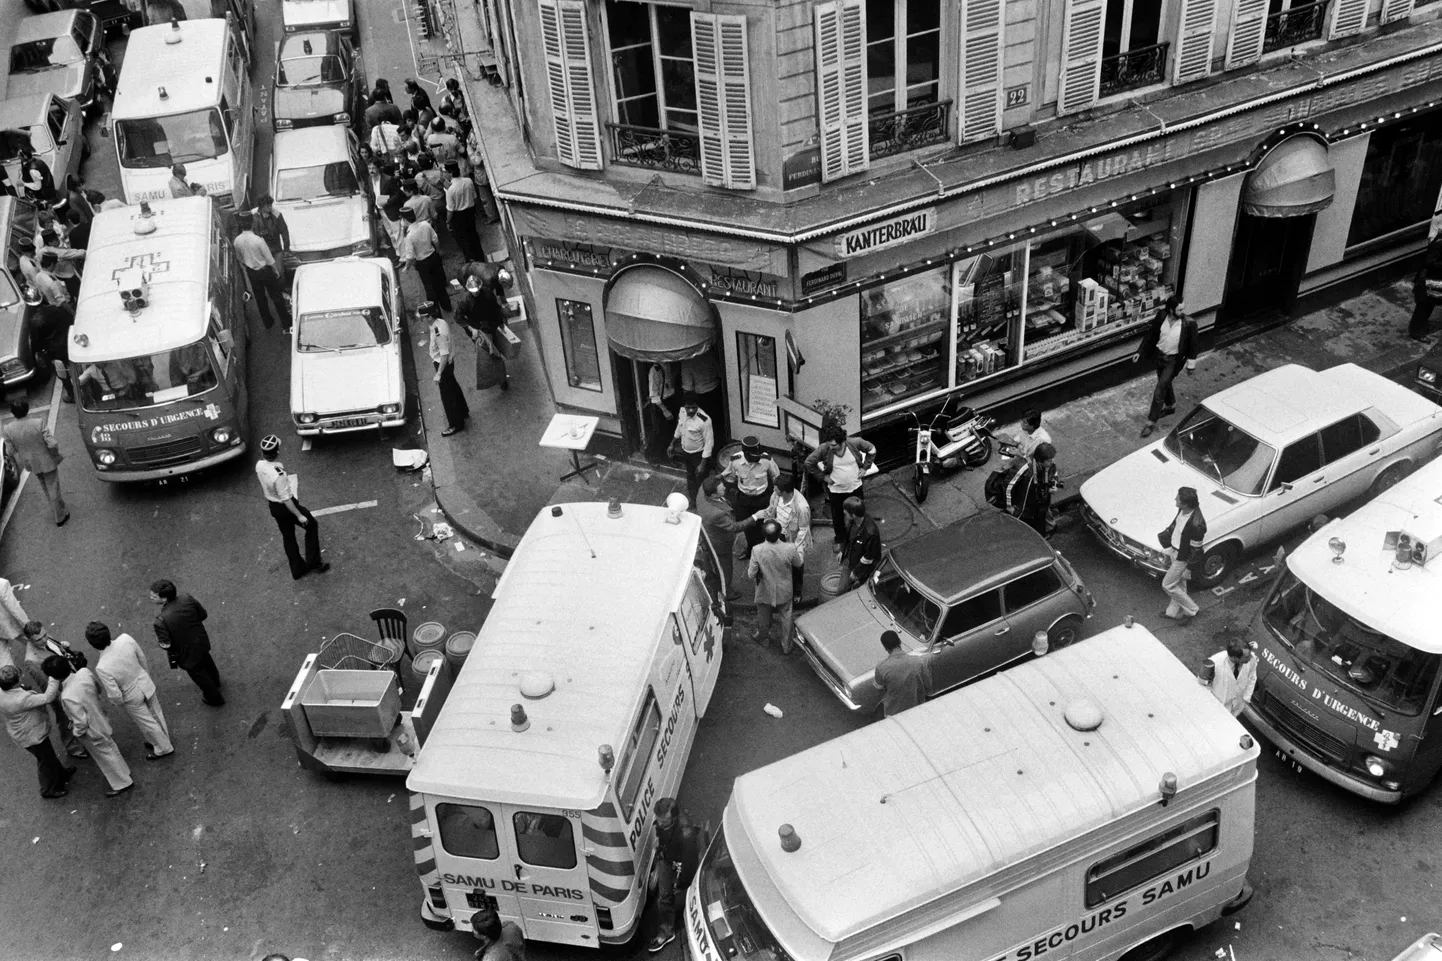 Arhiivifoto Pariisi 1982. aasta terrorirünnaku toimumispaigast.